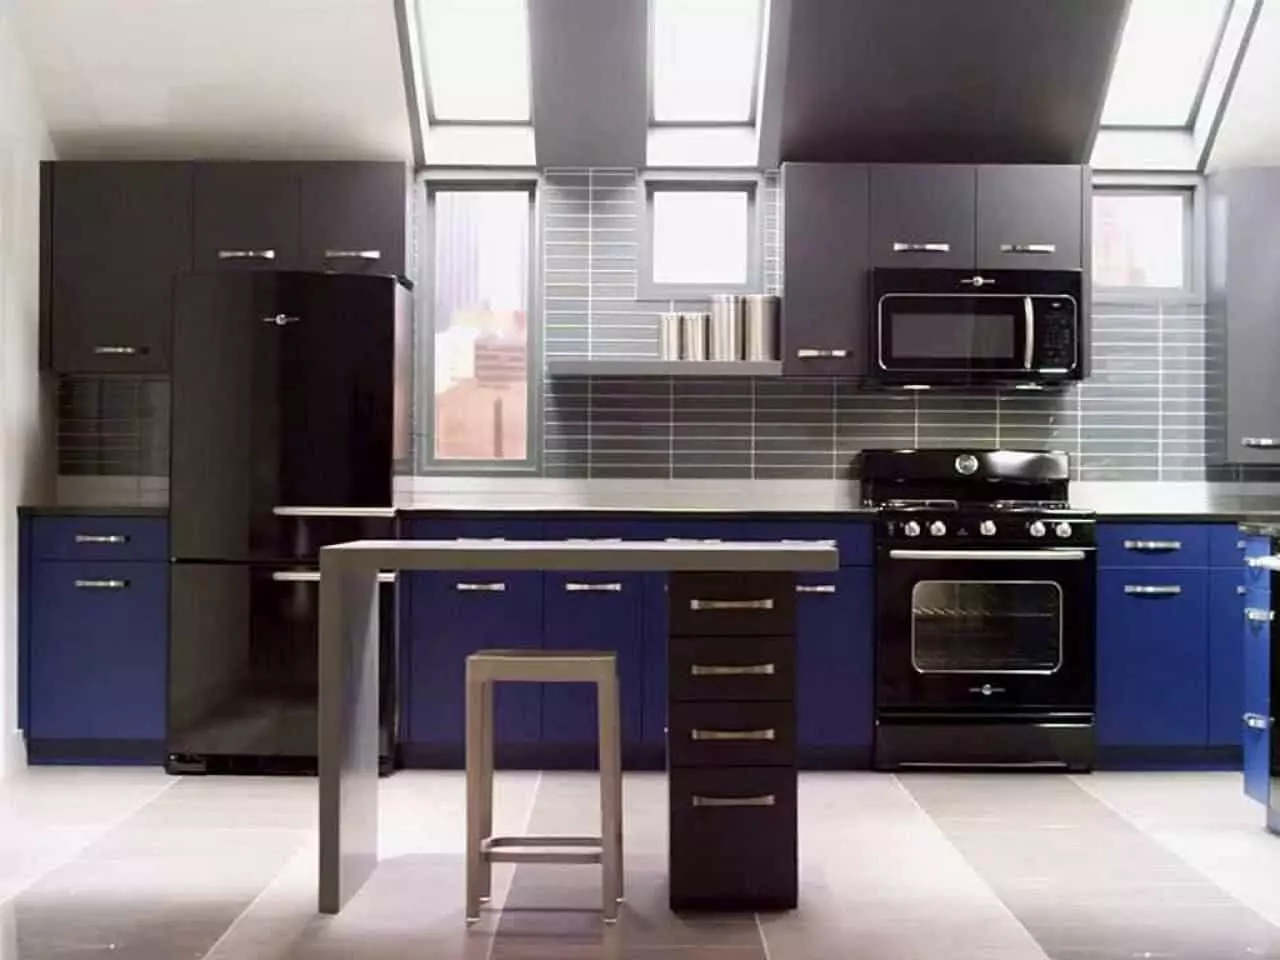 Sort køkken (100 billeder): sort fløjl køkken sæt med træ i indretning, matt og blankt køkken i grå-sorte farver, sort væg design 21175_54